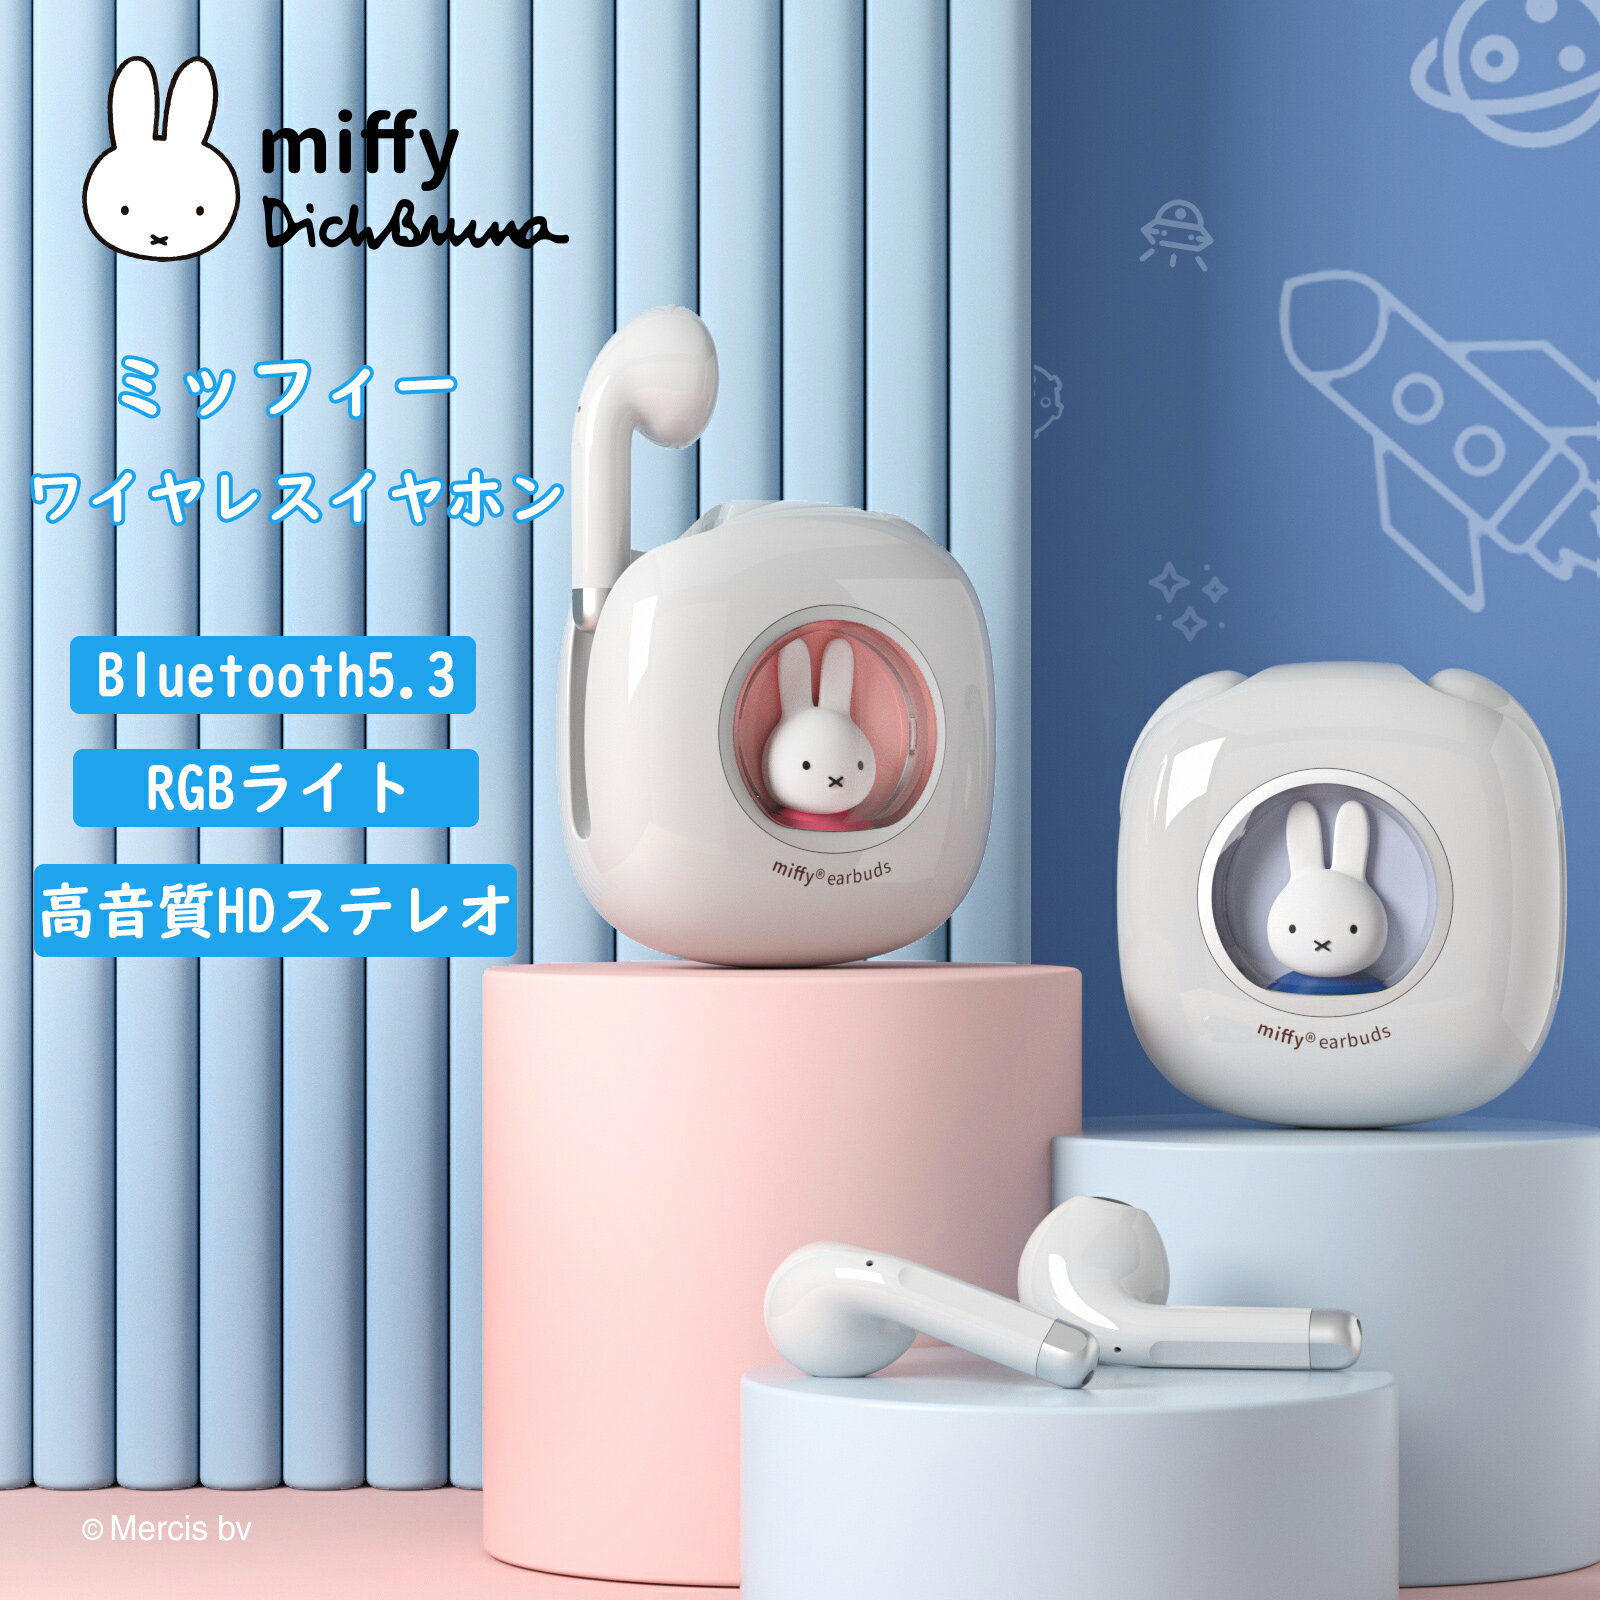 ミッフィー Miffy 日本正規代理店 ワイヤレスイヤホン Bluetooth 5.3 高音質 IPX5 防水 快適装着001 ミッフィー ワイヤレスイヤホン INS人気 ミッフィー ミッキー ワイヤレスイヤホン bluetooth かわいい イヤホン